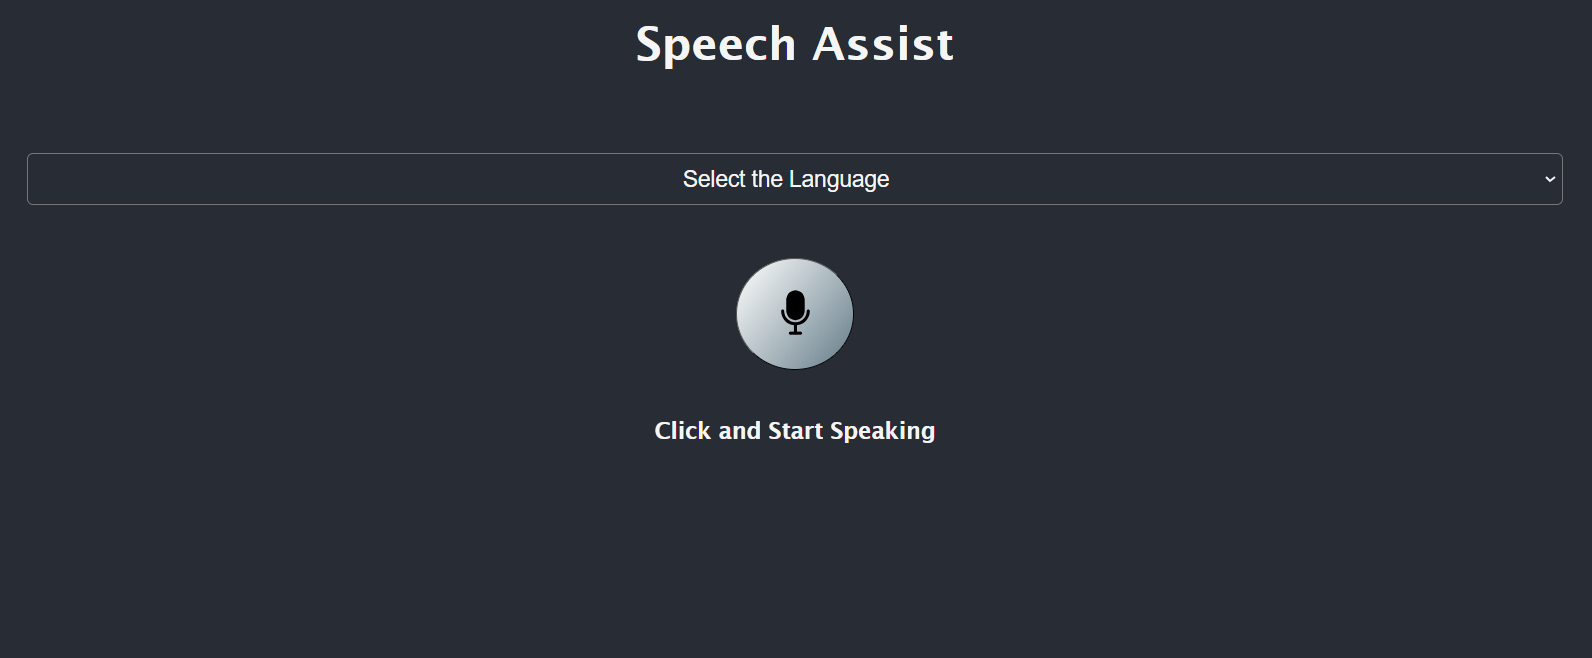 Speech Assist